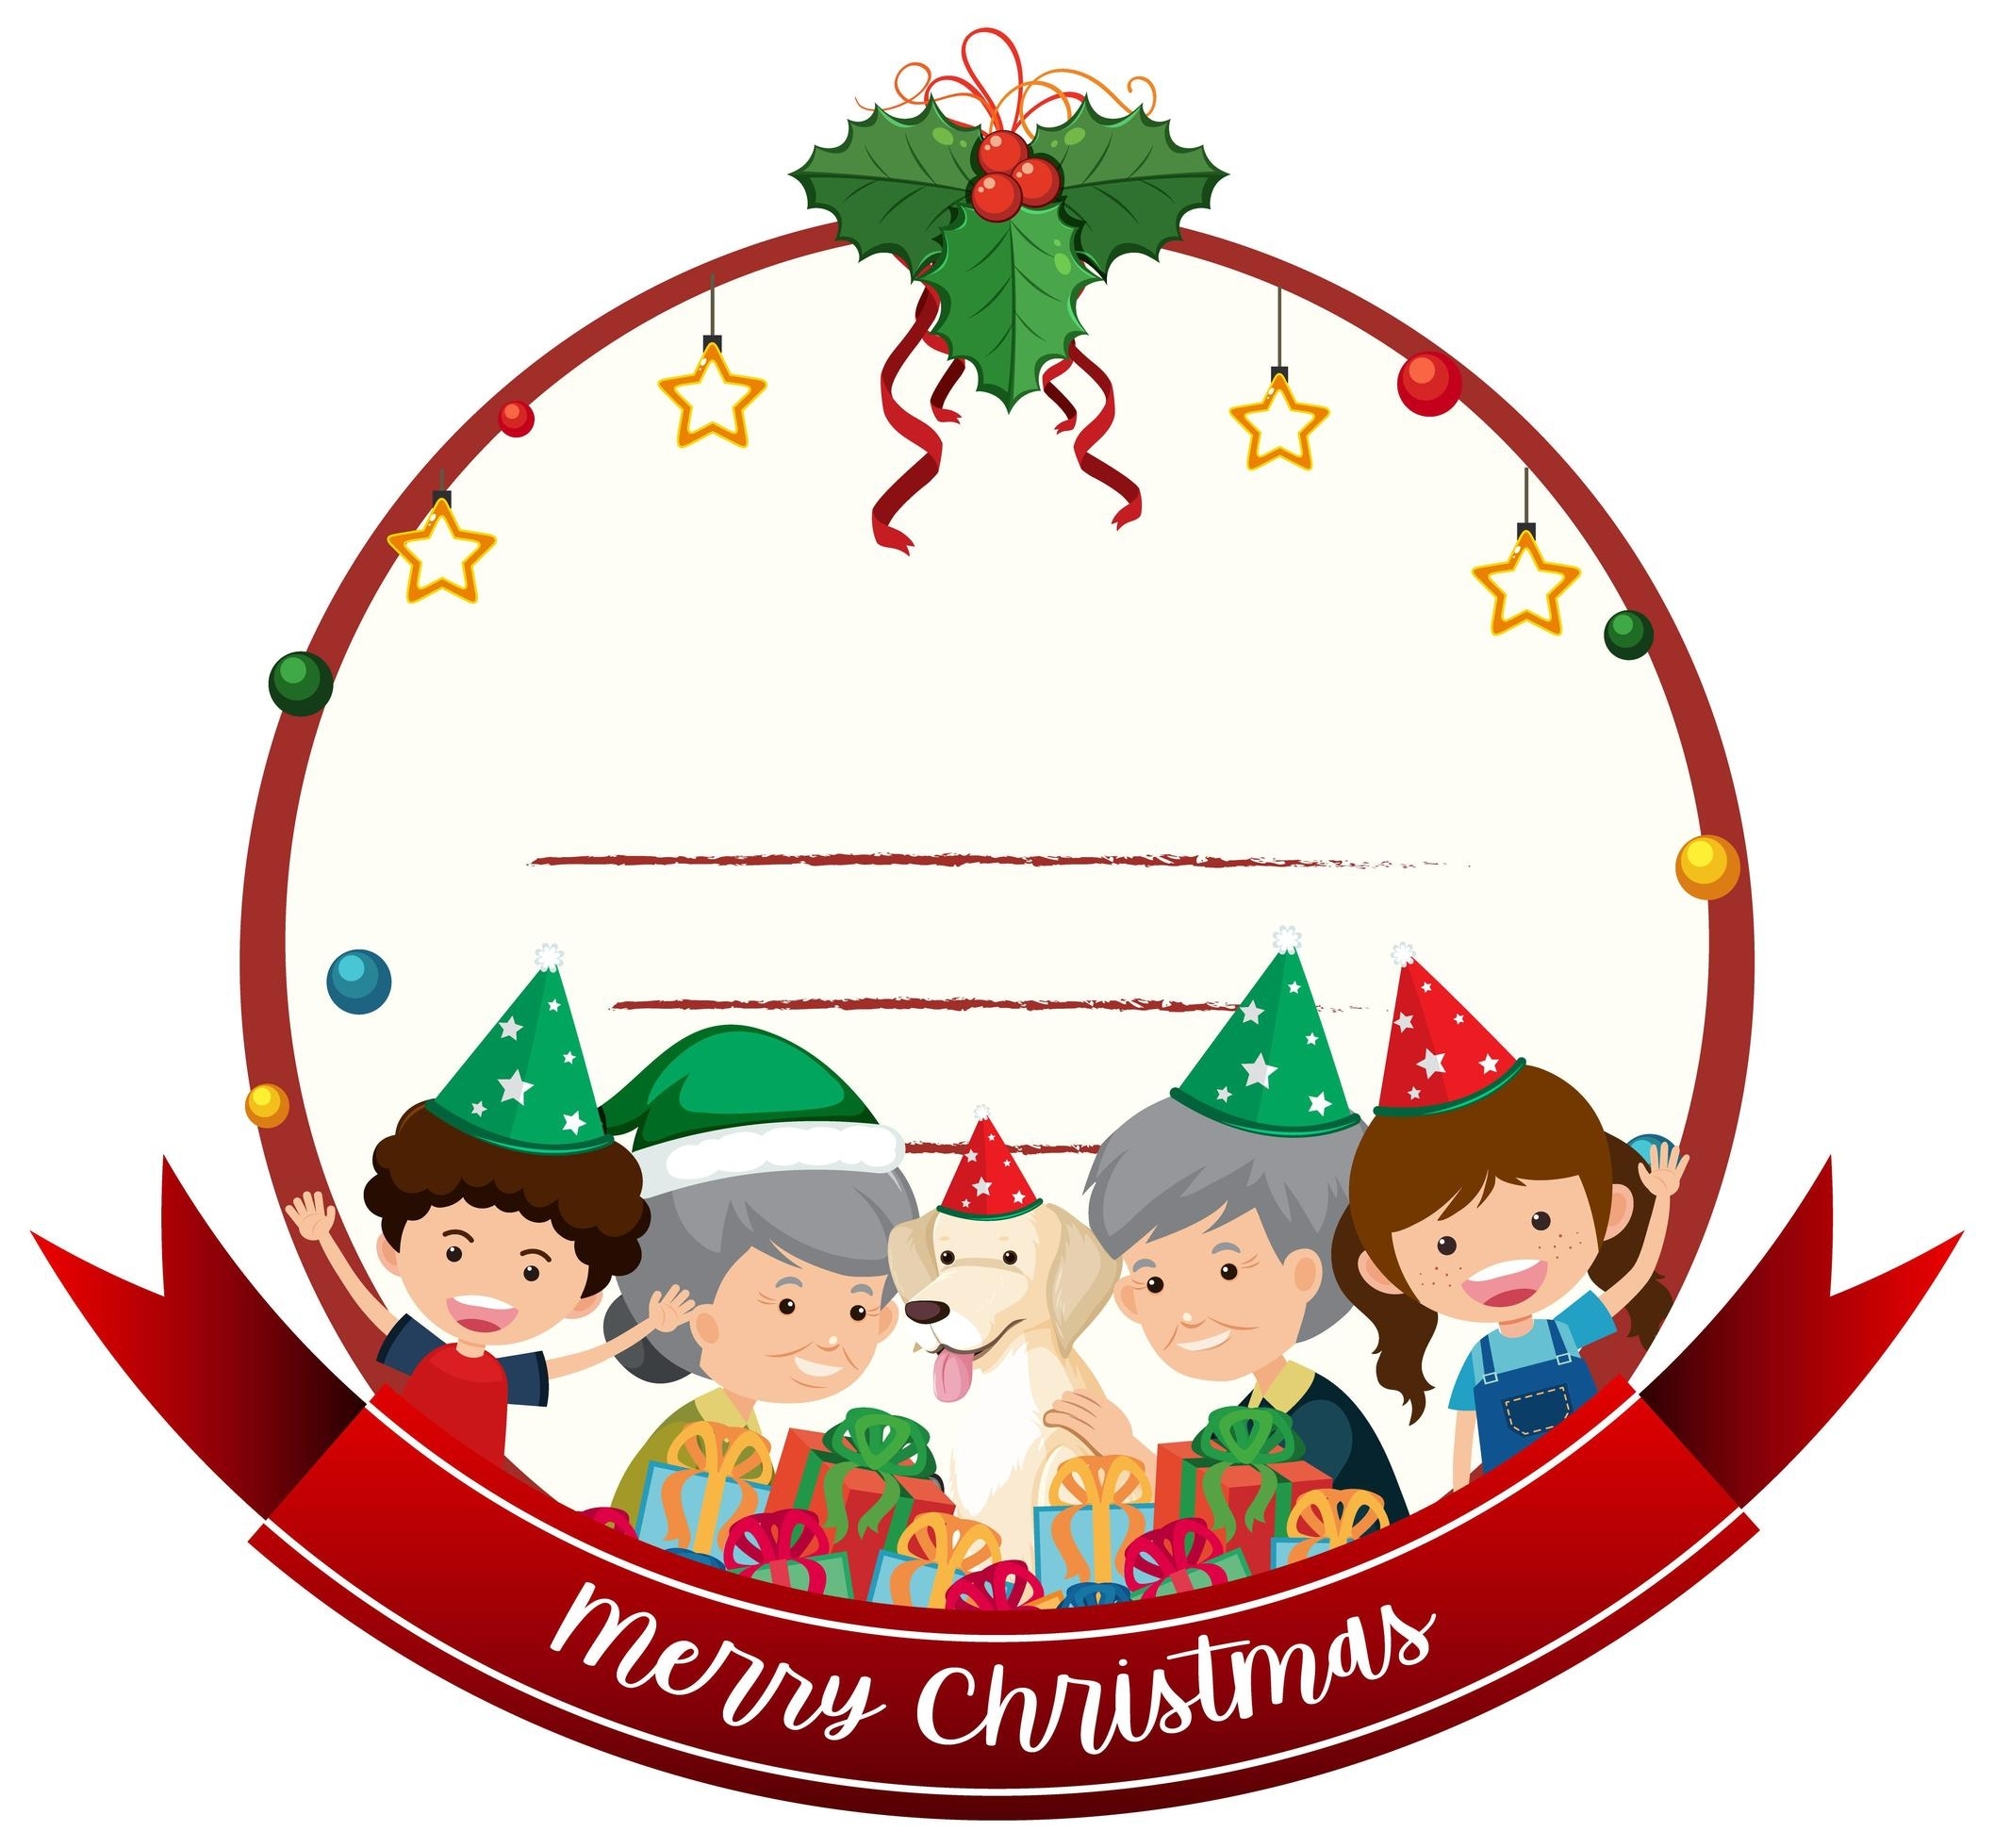 Blank Merry Christmas Card Template 1437556 Vector Art At Vecteezy For Blank Christmas Card Templates Free